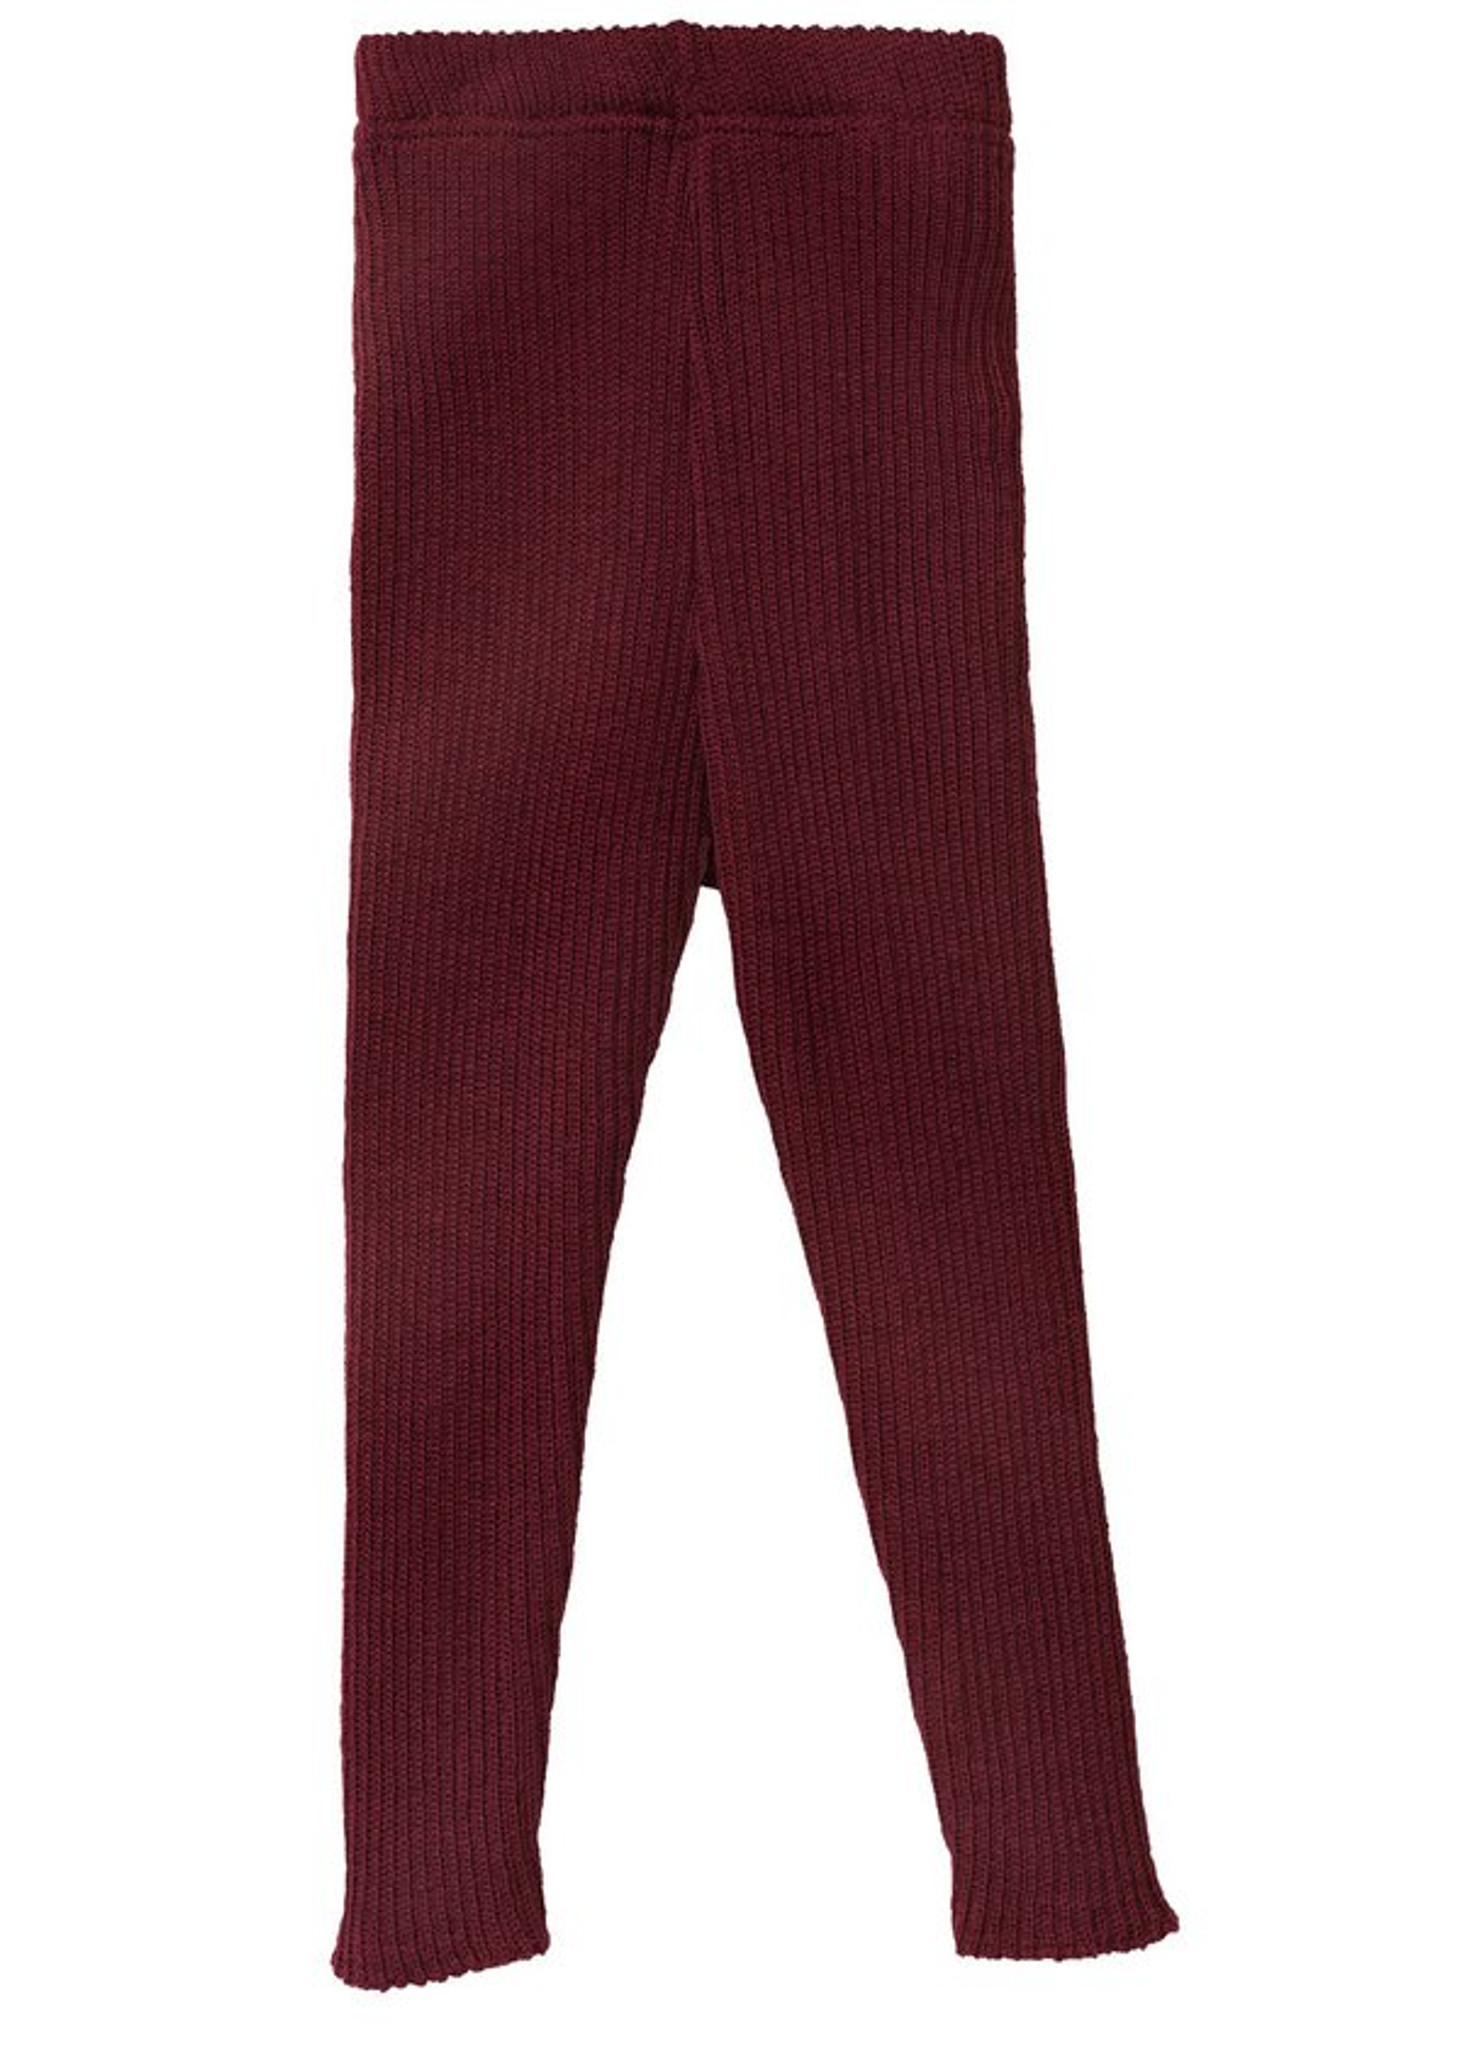 Woolen leggings for Maroon Legging Winter Wear Wineter leggings for women  legging for girls Woolen Leggings